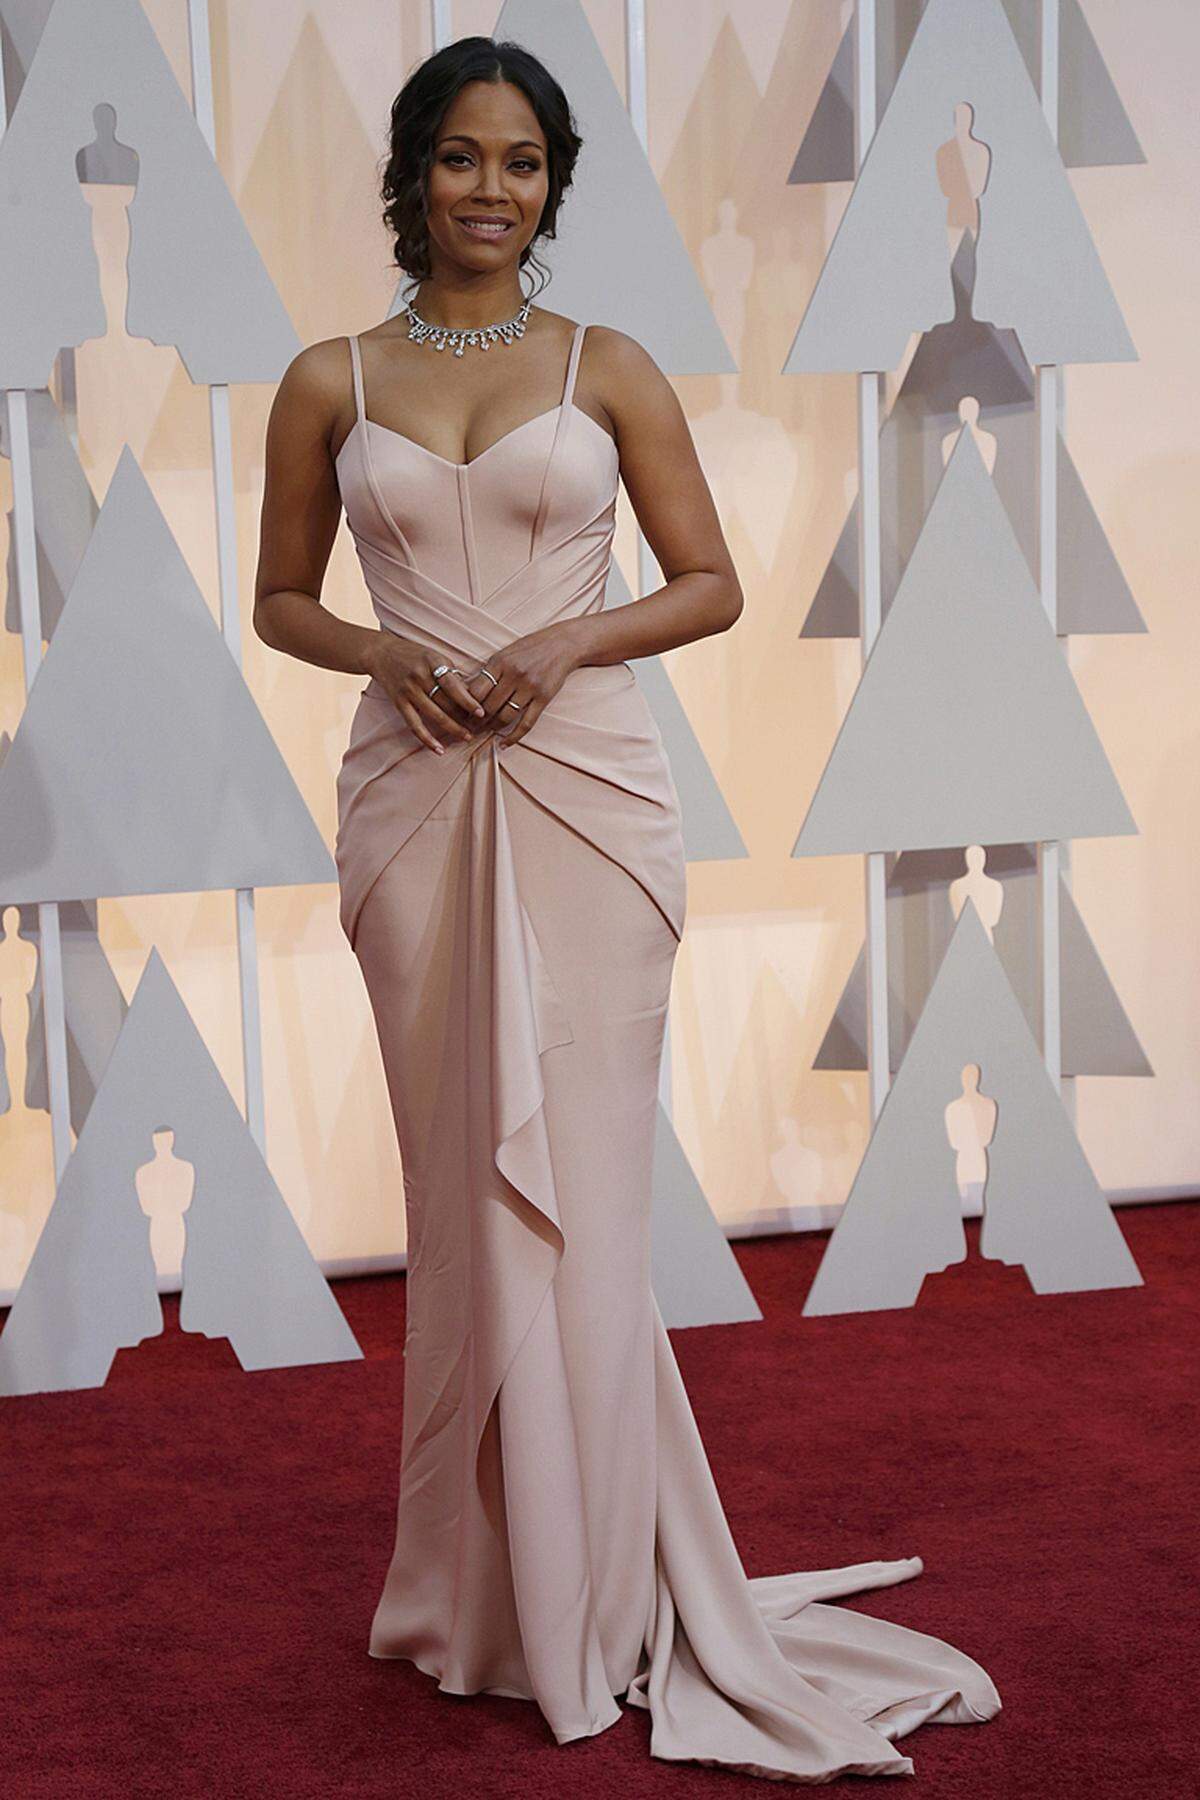 Zoe Saldana war mit "Guardians of the Galaxy" im vergangenen Jahr beim Publikum sehr erfolgreich. Bei der Oscar-Gala glänzte sie in Versace. Kaum mehr nachvollziehen lässt sich ihre Zwillingsgeburt im Jänner.